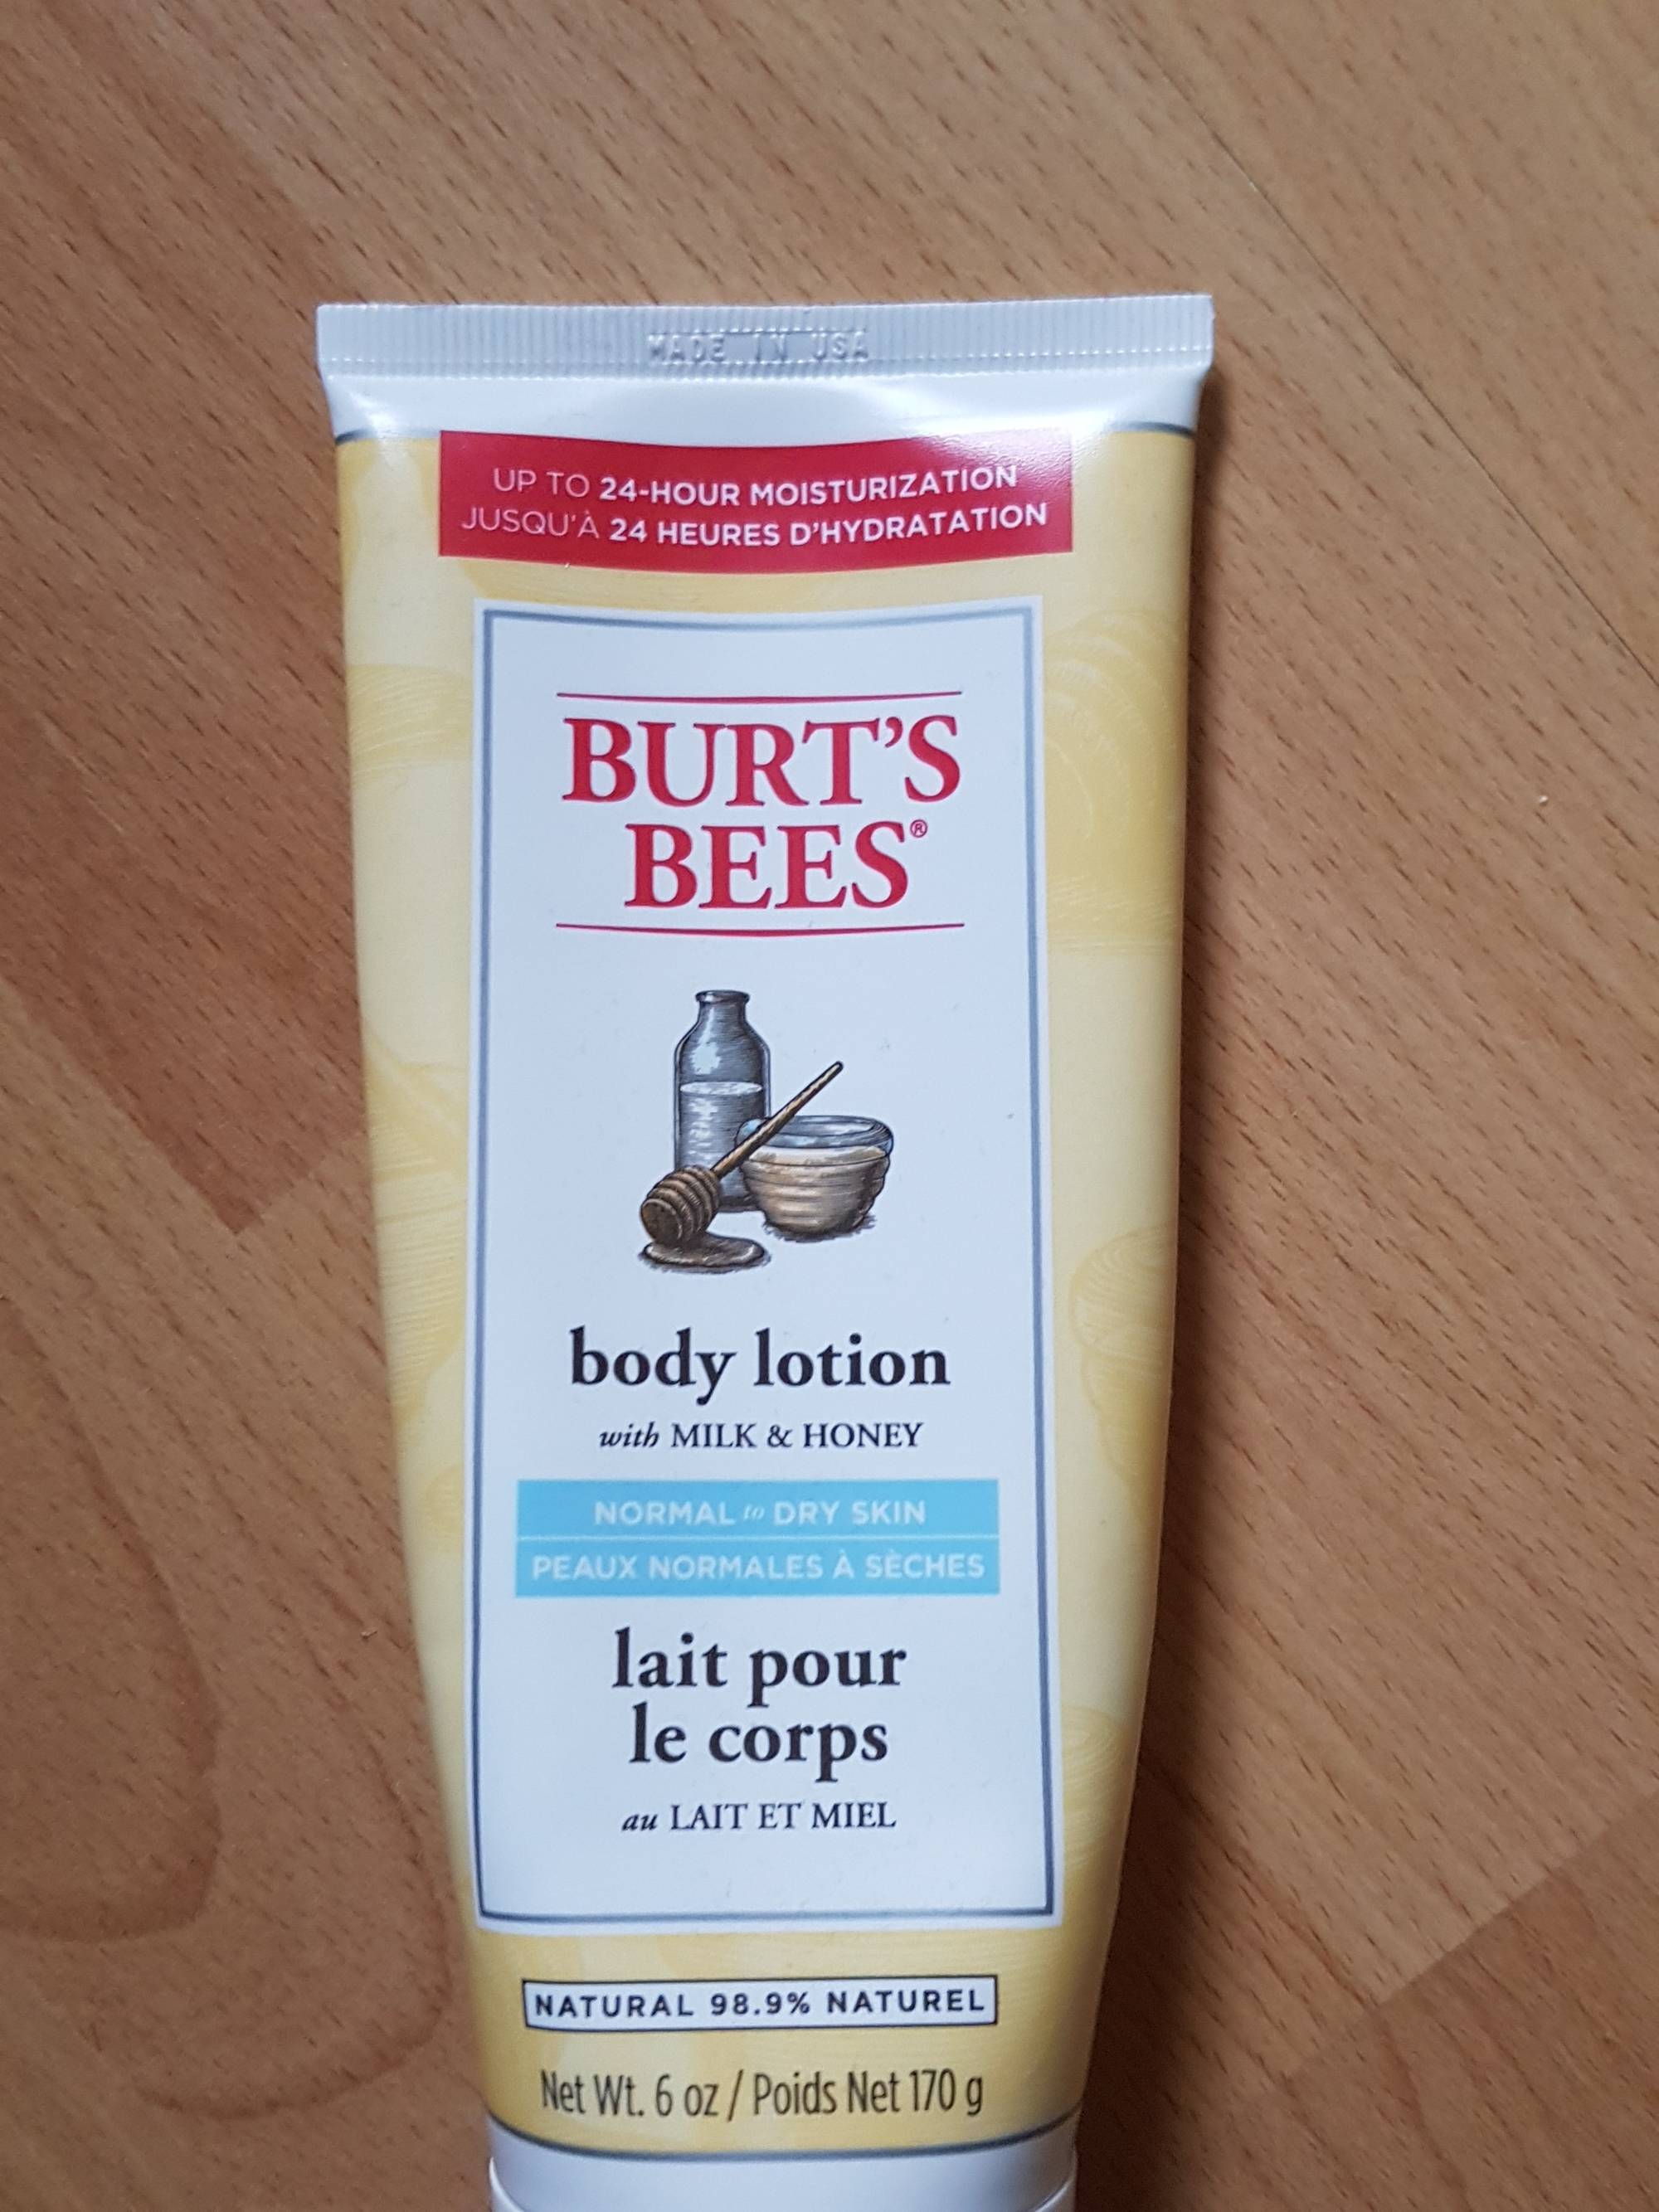 BURT'S BEES - Lait pour le corps au lait et miel